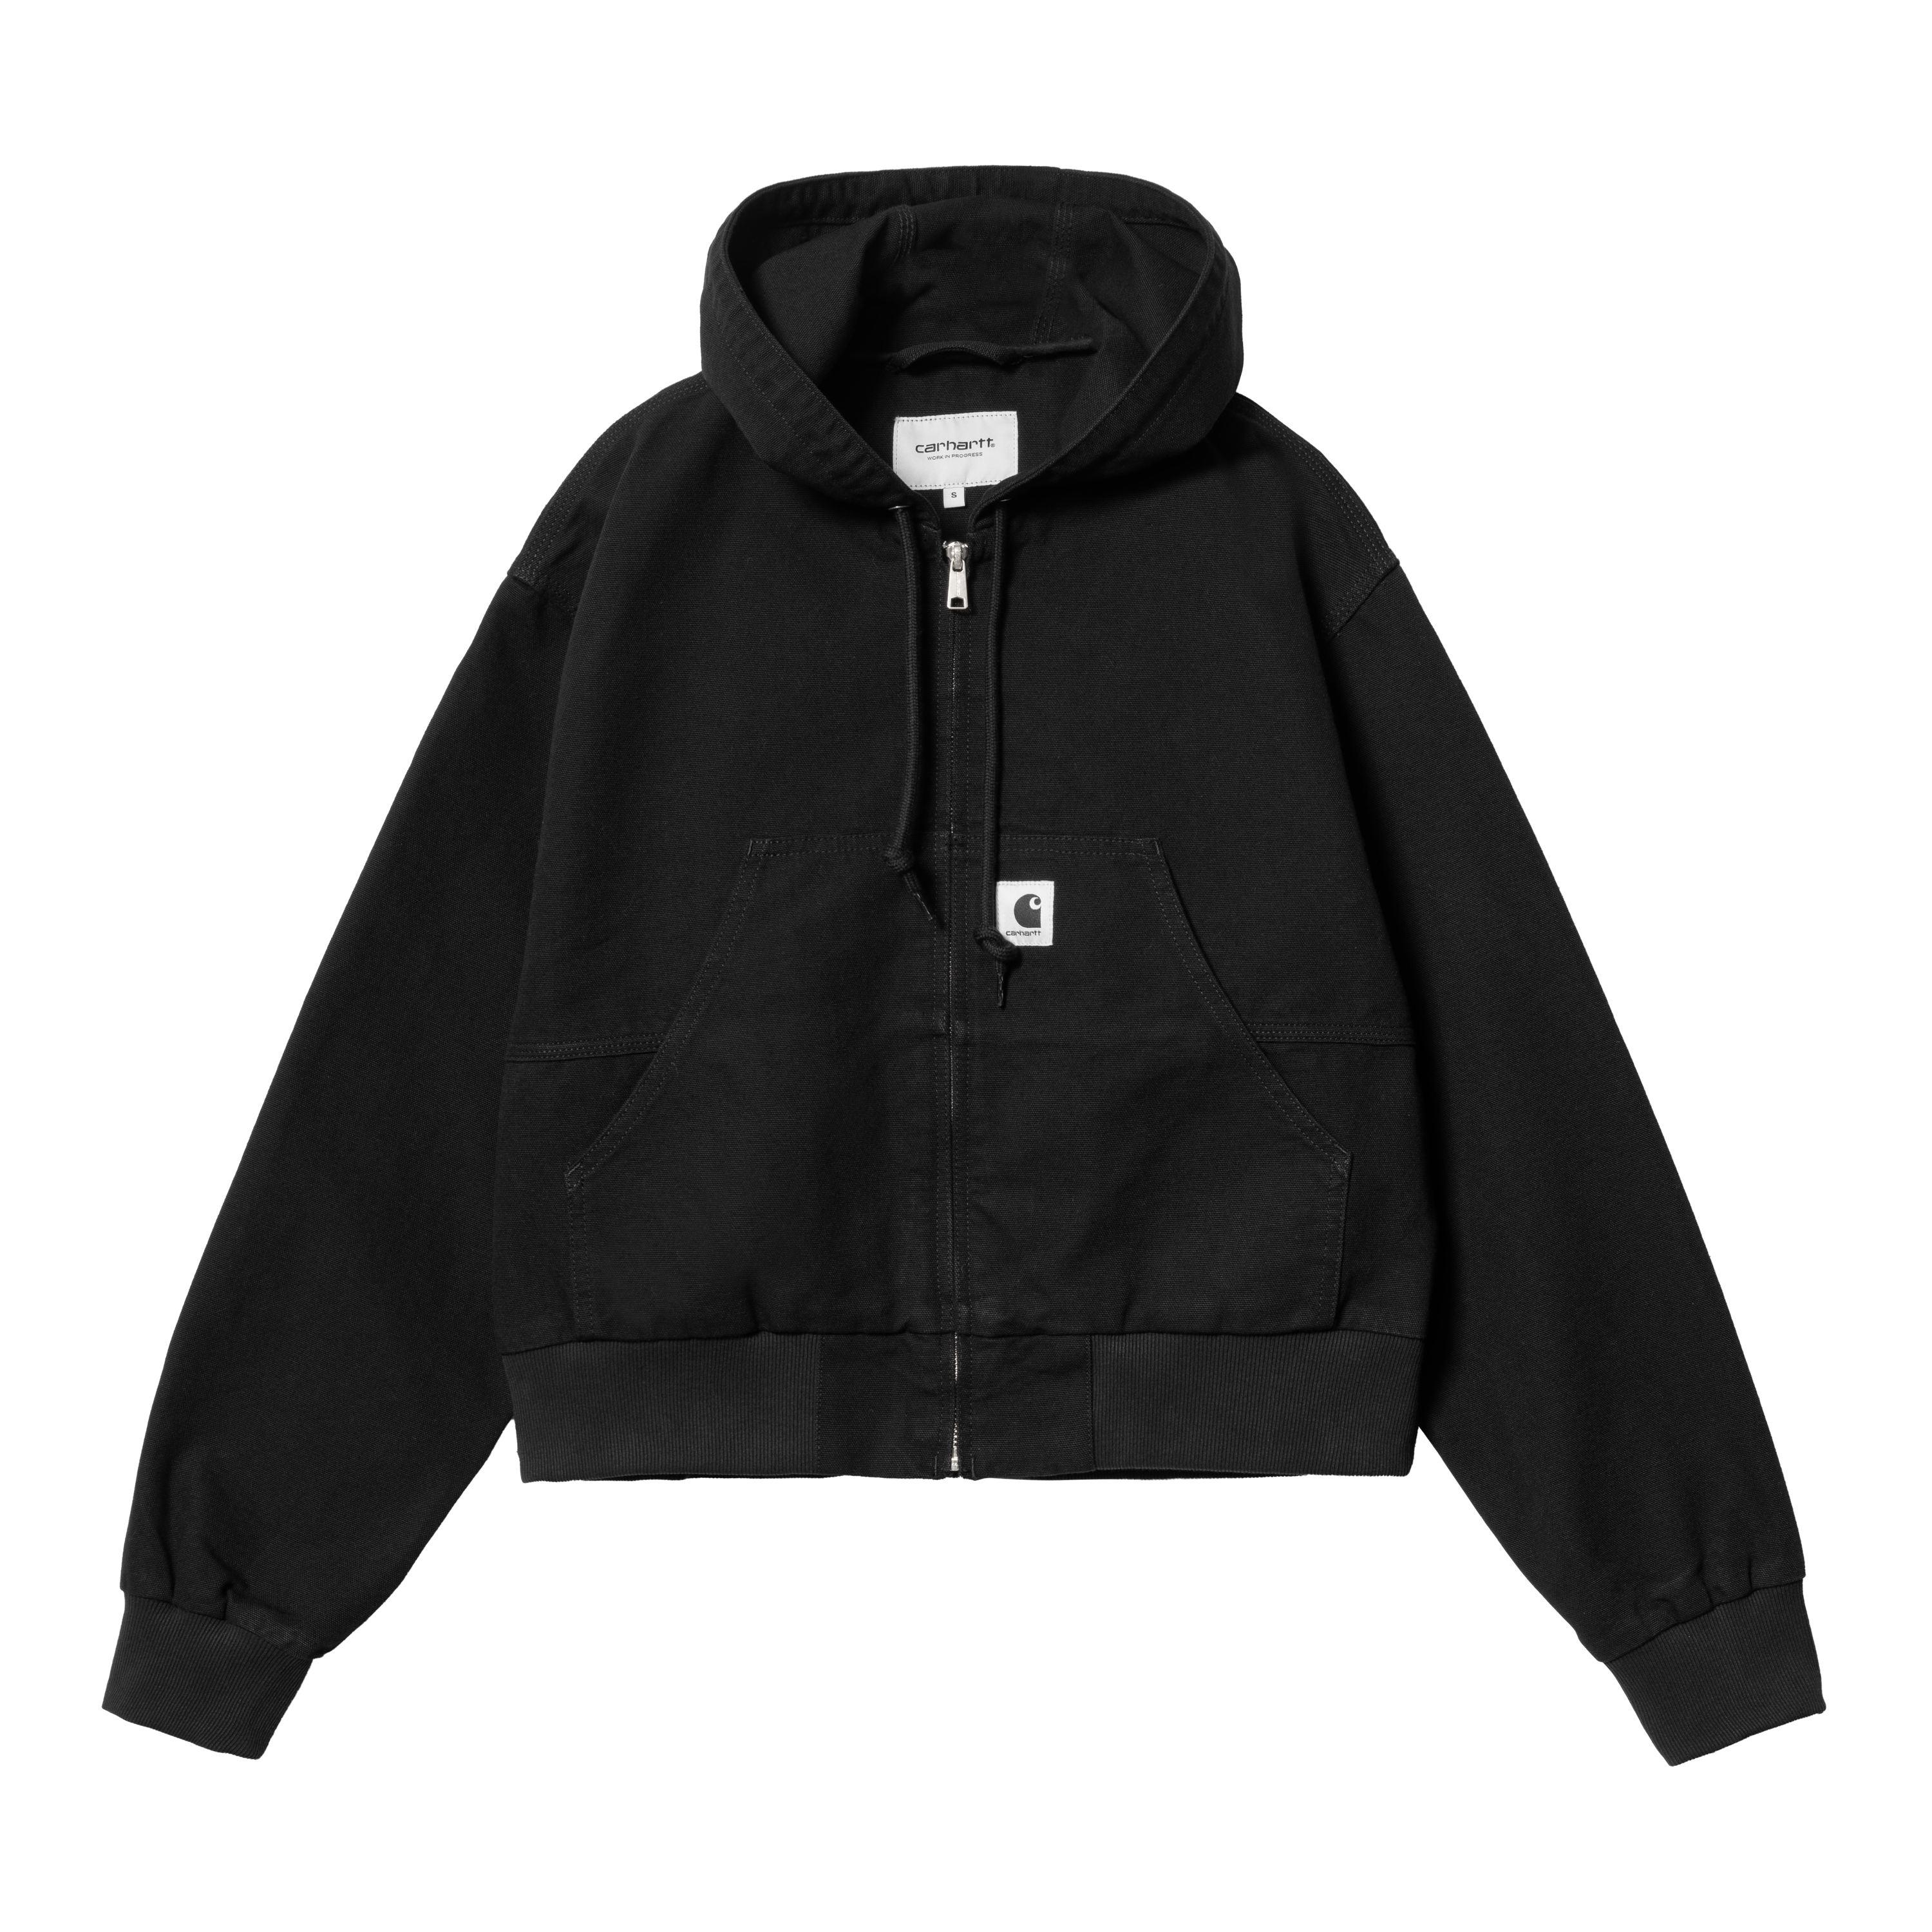 Carhartt WIP Women’s Amherst Jacket in Black